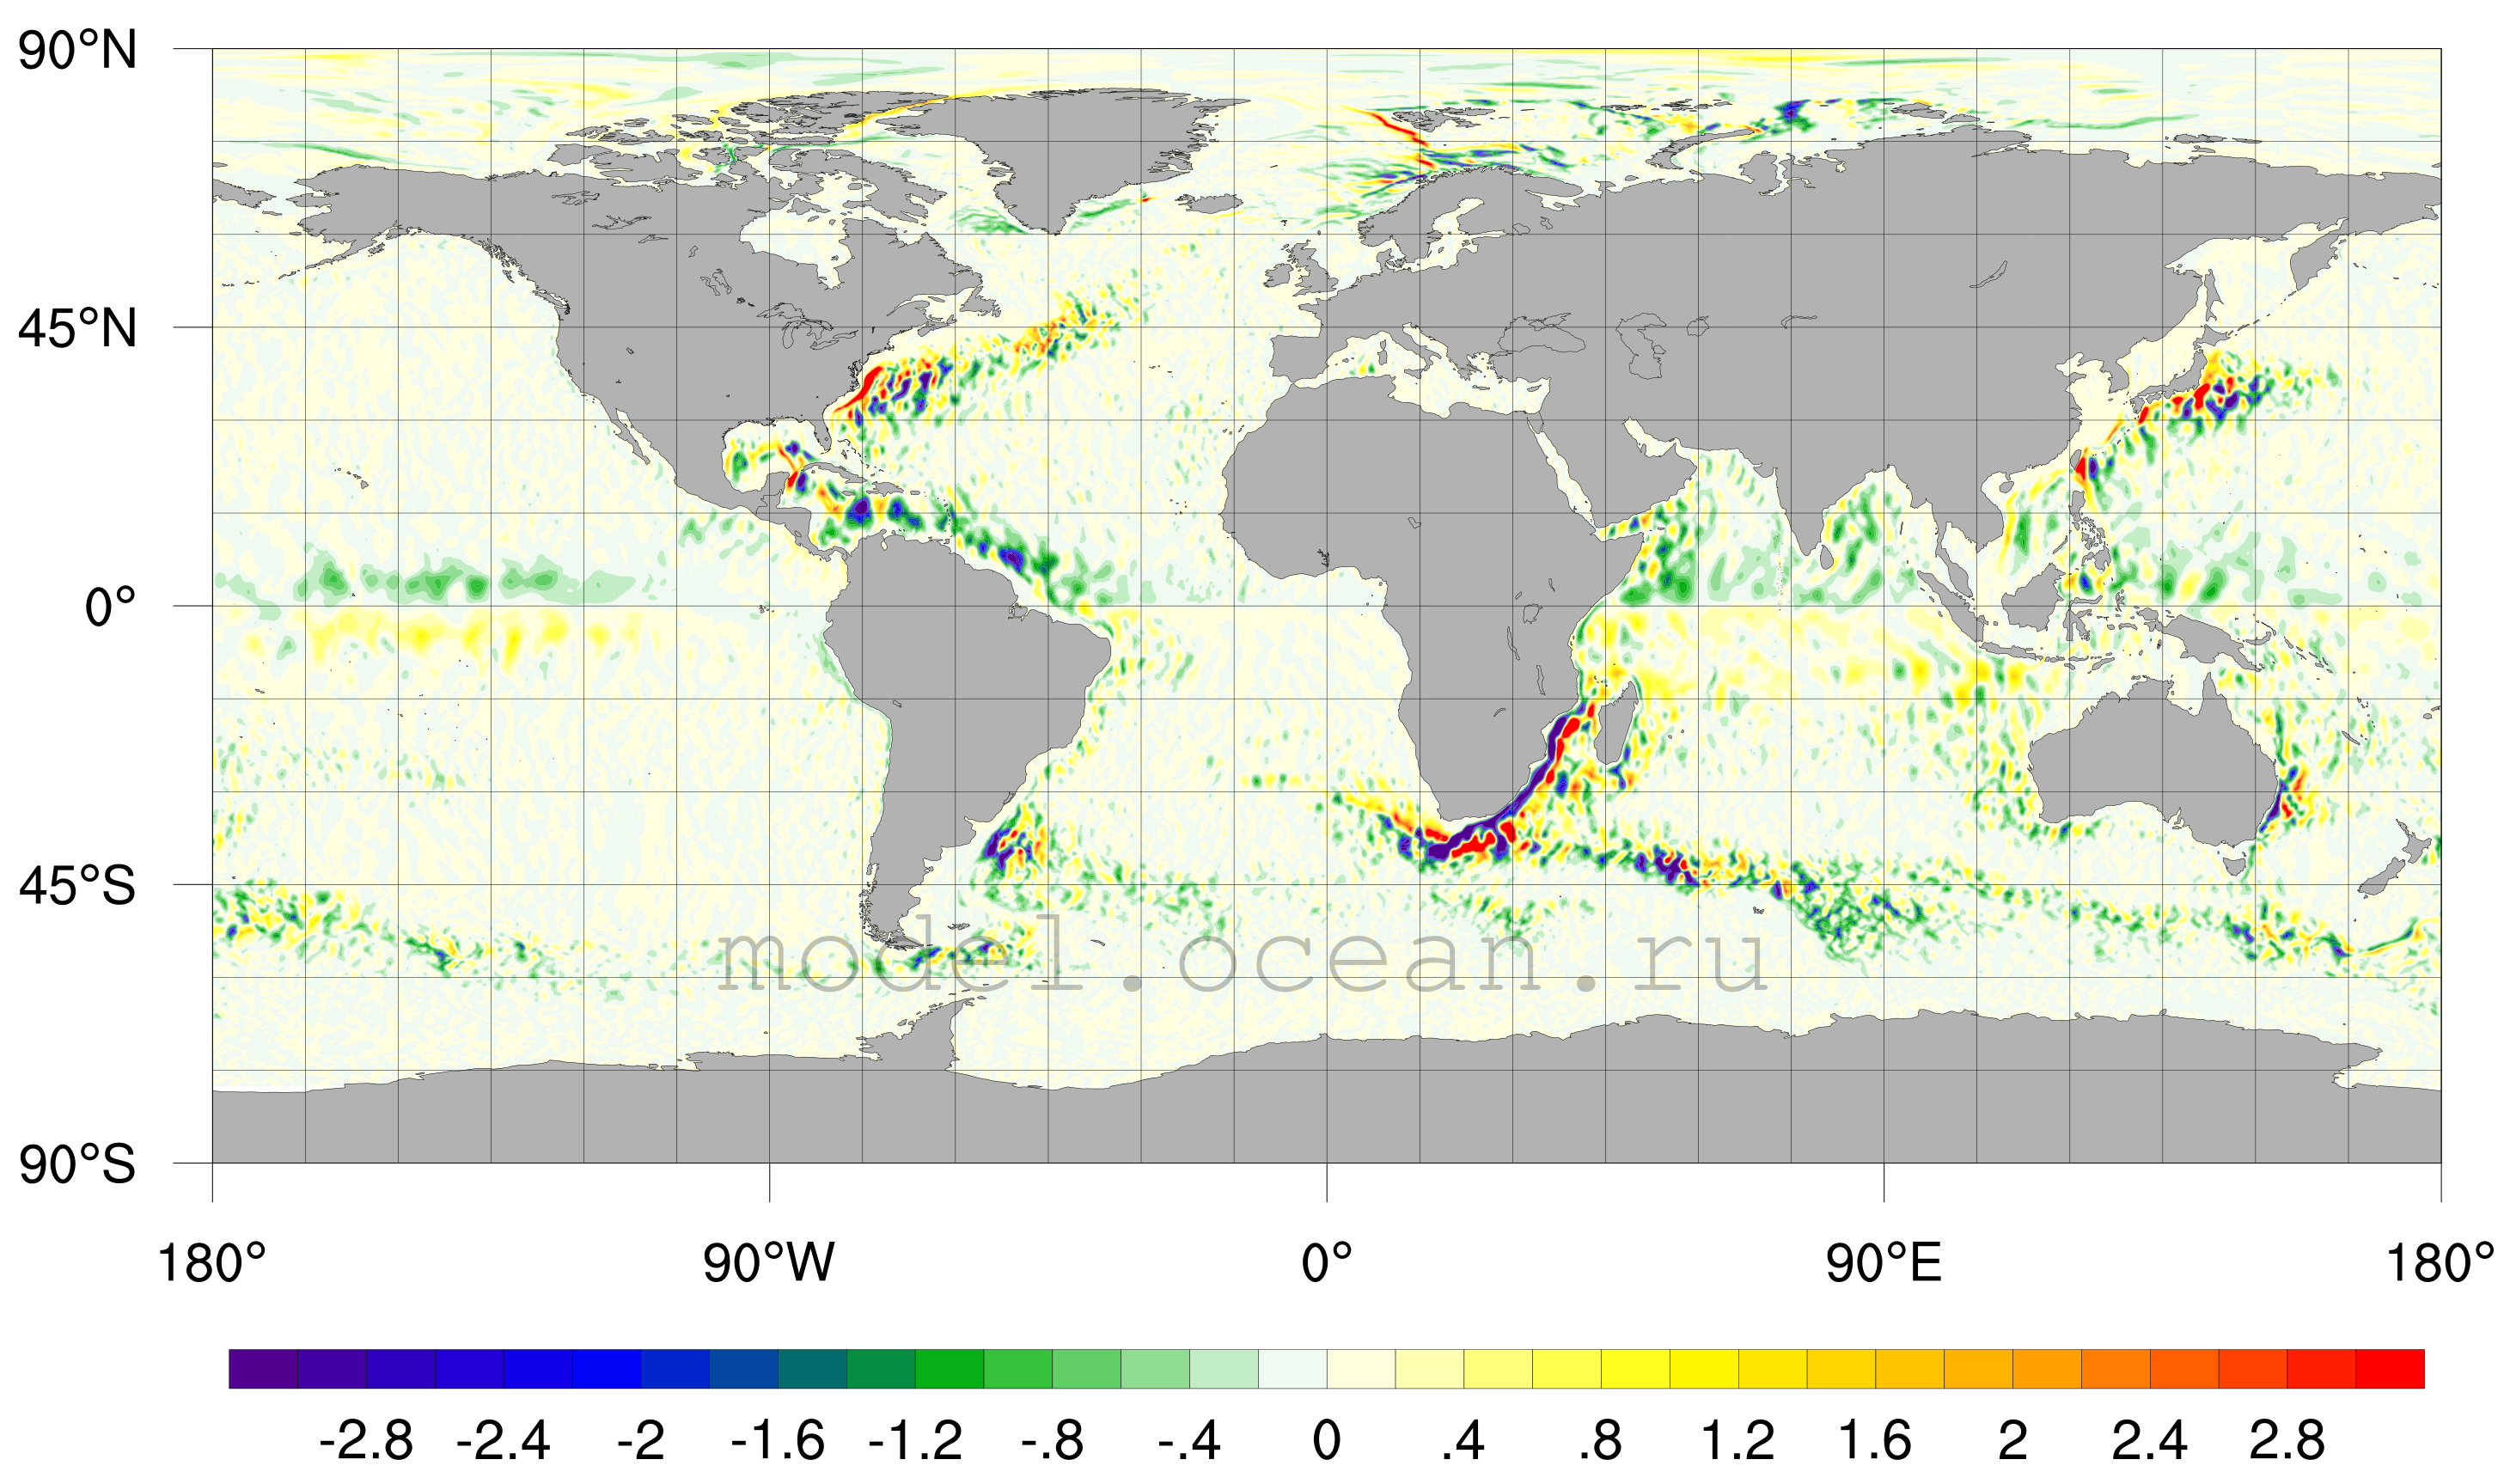 Вихревой меридиональный перенос тепла по данным модели ИВМИО-global01, проинтегрированный по всей толще океана, ×10^8 Вт/м (Ushakov and Ibrayev, 2018a)